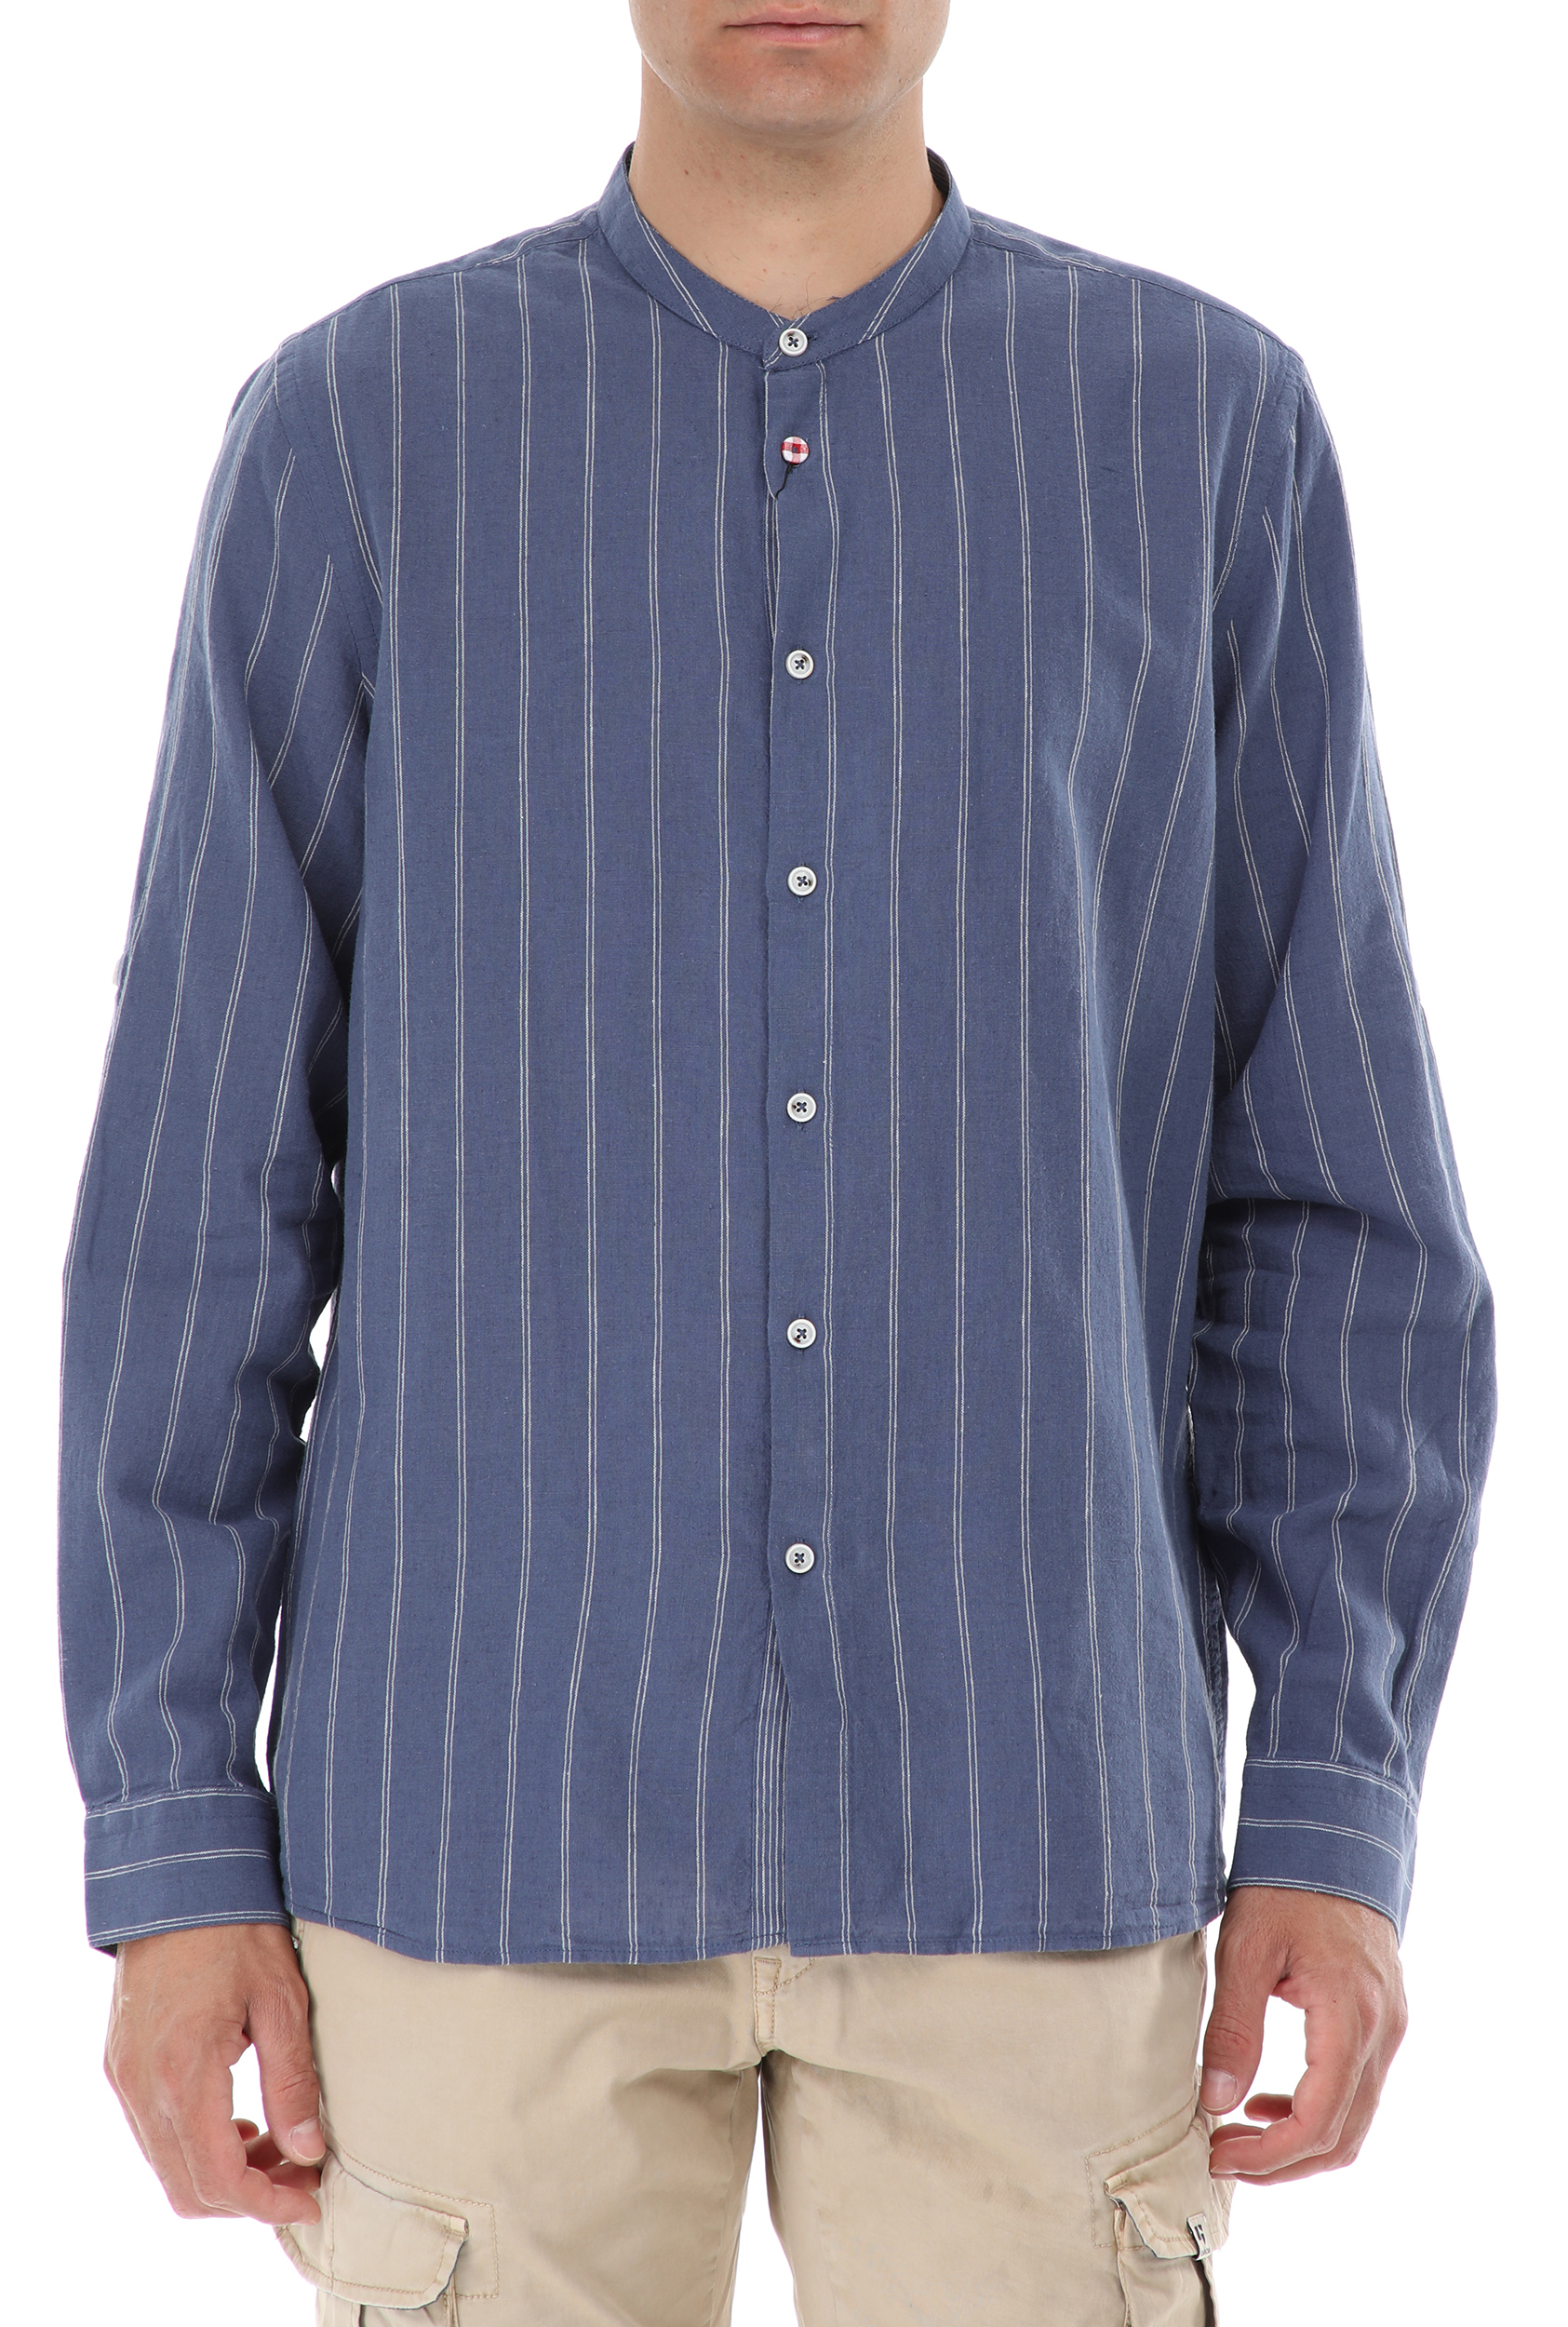 Ανδρικά/Ρούχα/Πουκάμισα/Μακρυμάνικα SSEINSE - Ανδρικό πουκάμισο SSEINSE COREANA M/L μπλε λευκό